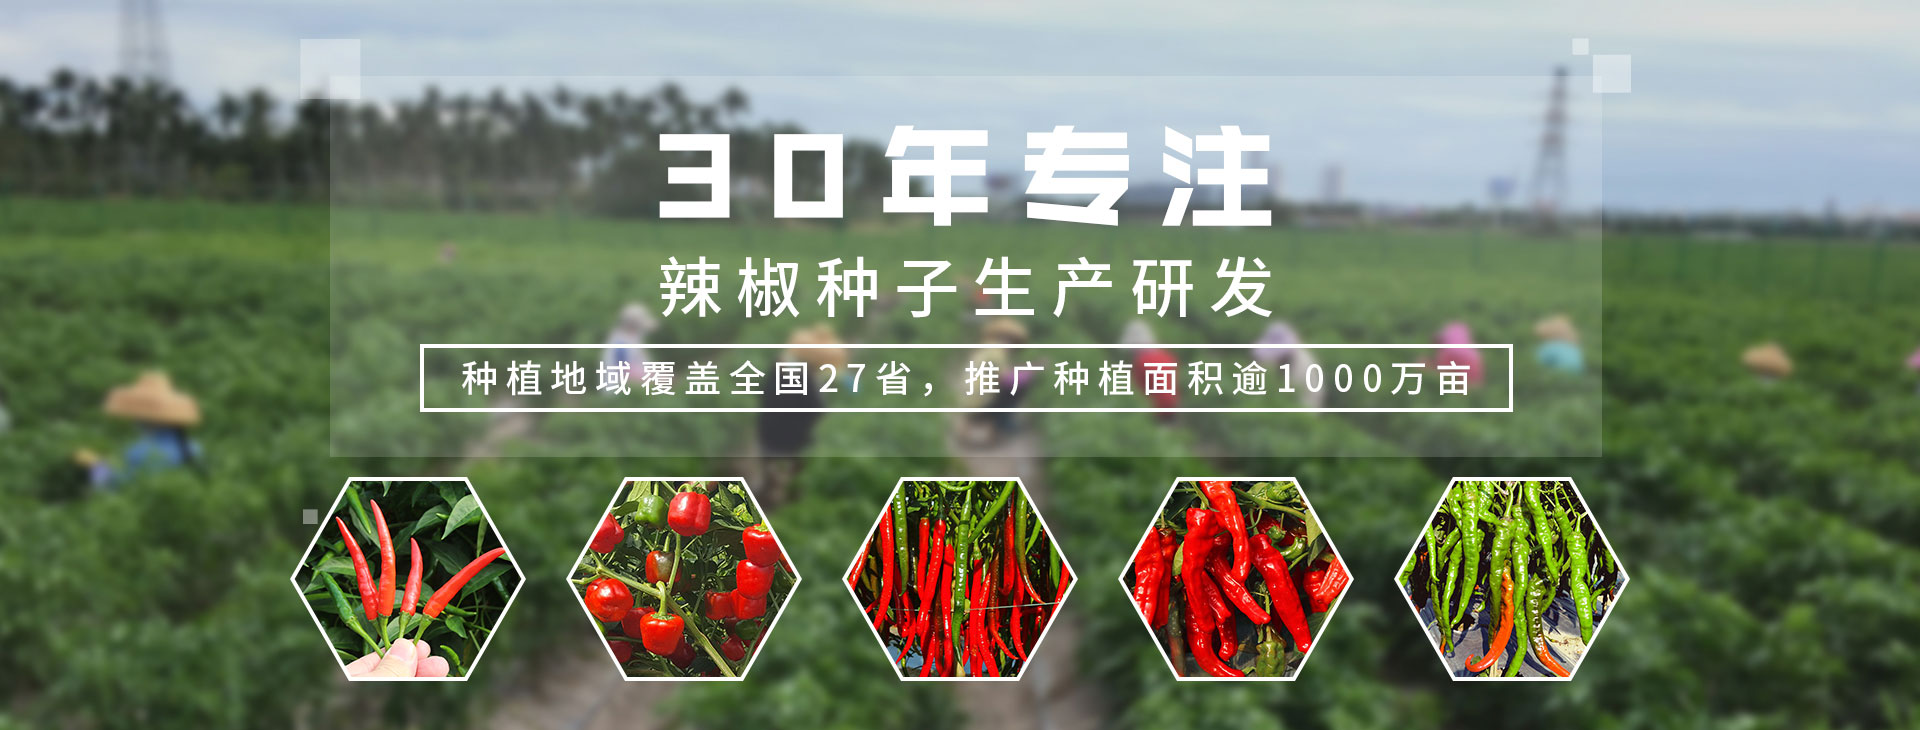 30年专注辣椒种子生产研发，种植地域覆盖全国27省，推广种植面积逾1000万亩